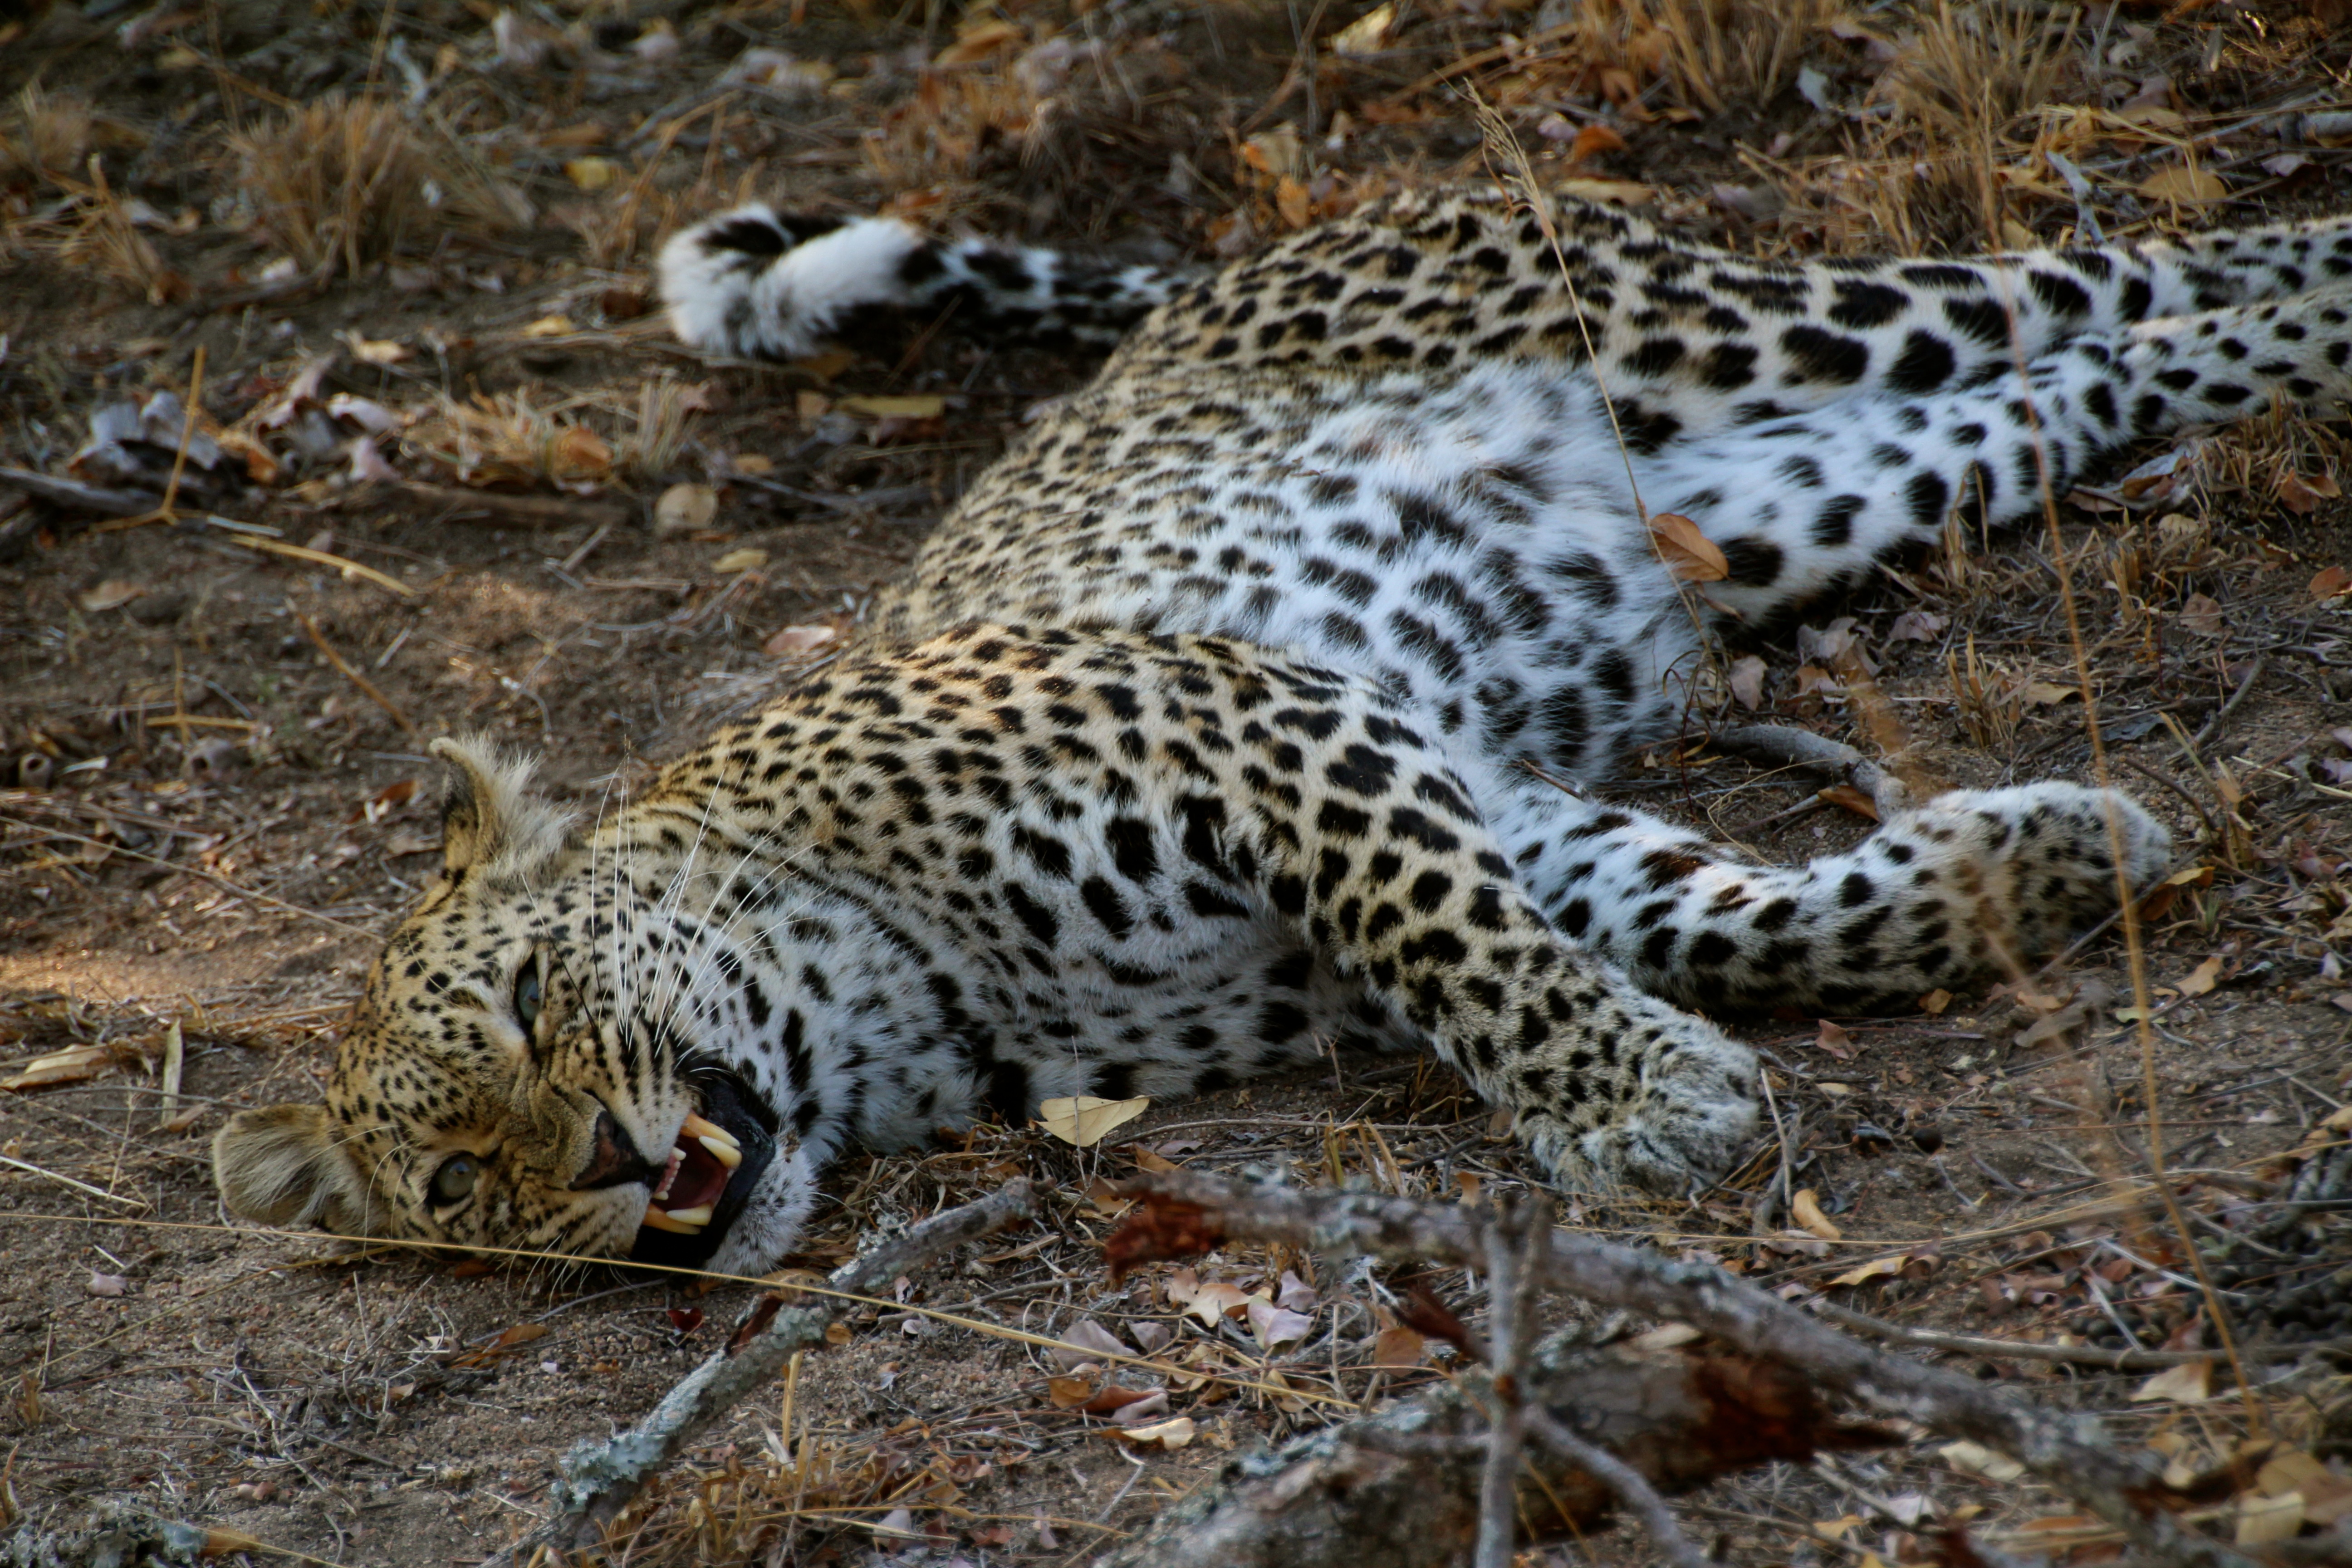 Leopard in Sabi Sands